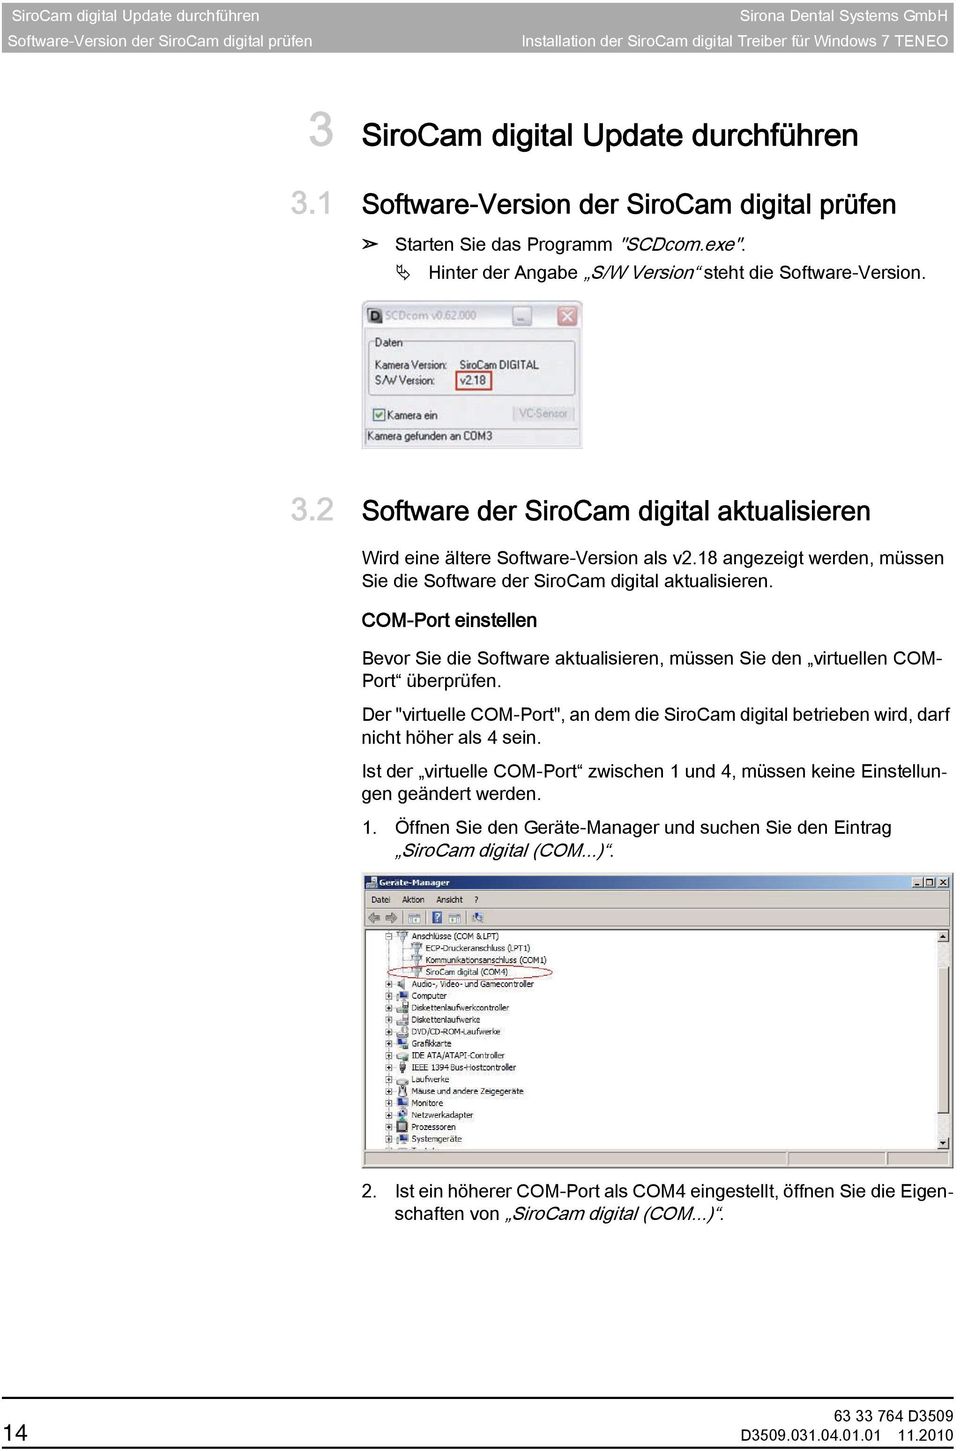 2 Software der SiroCam digital aktualisieren Hinweis auf Software-Version Wird eine ältere Software-Version als v2.18 angezeigt werden, müssen Sie die Software der SiroCam digital aktualisieren.